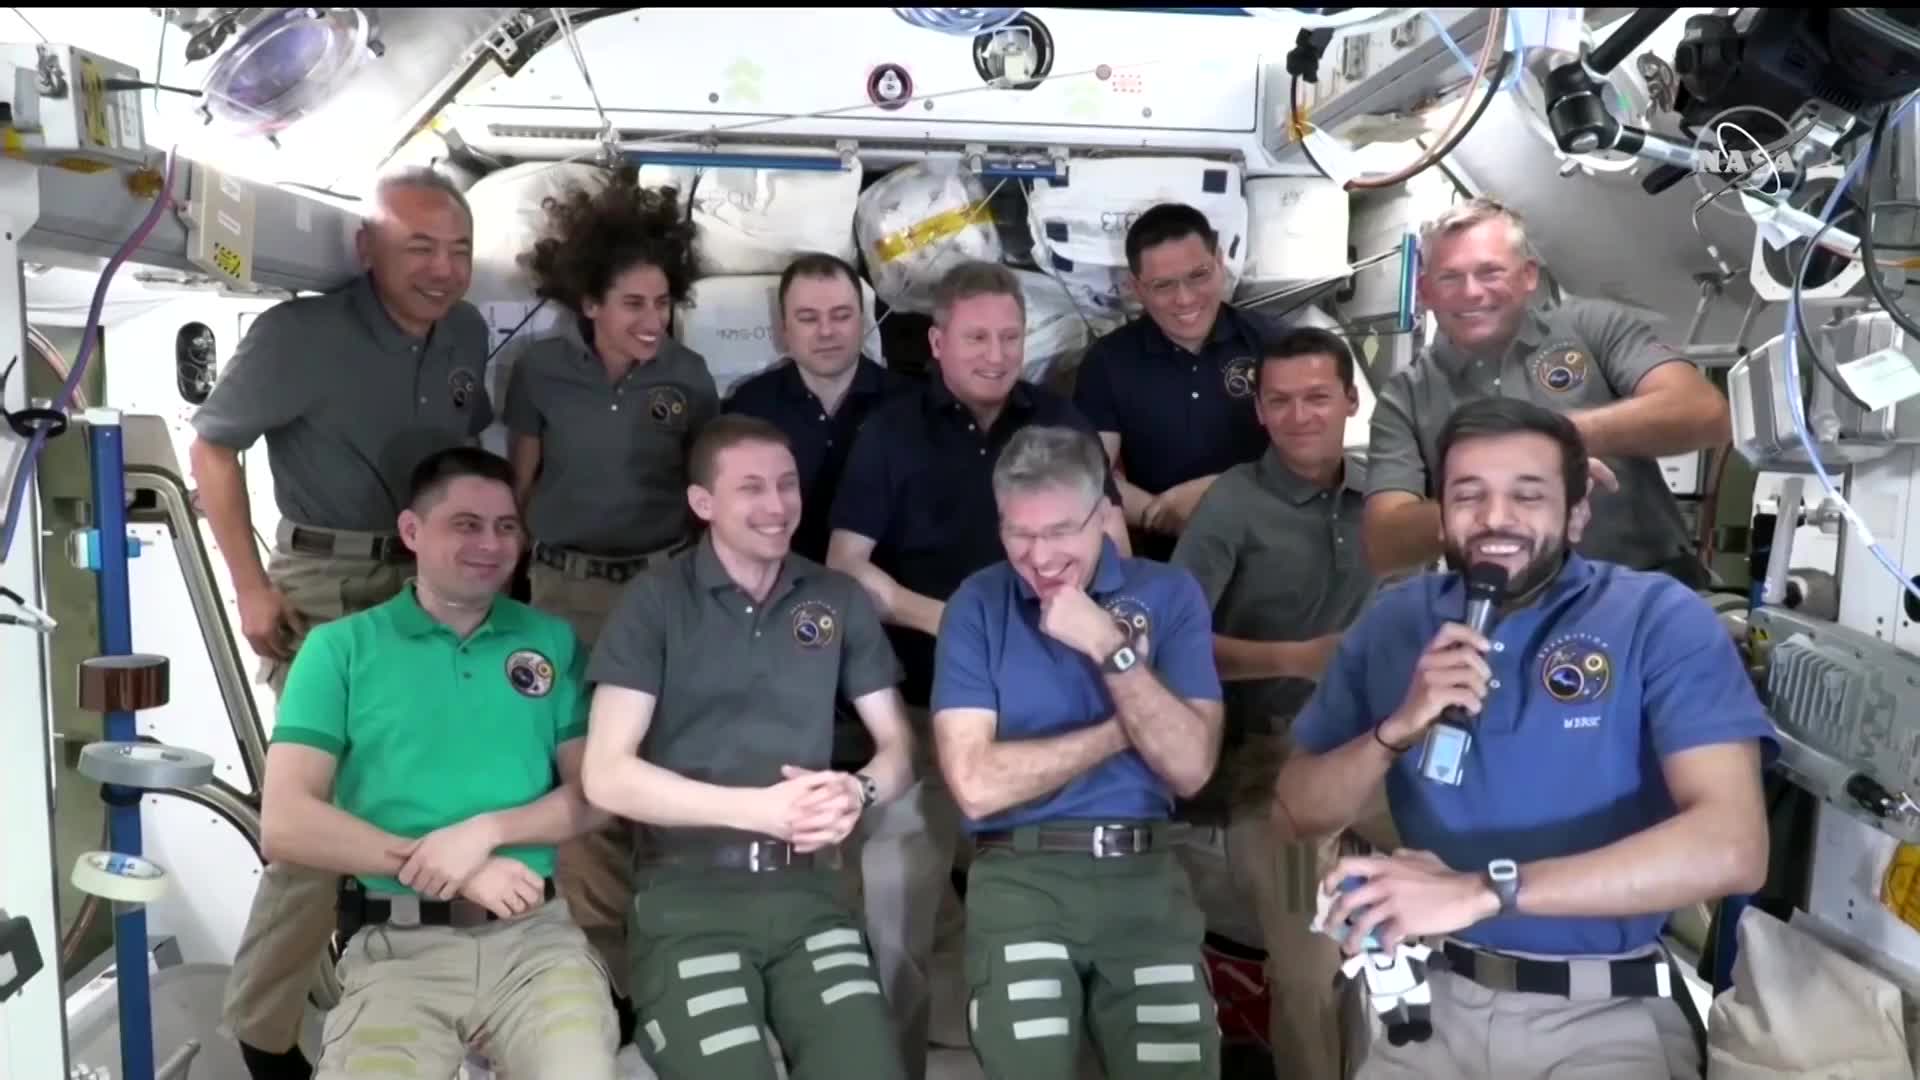 Vídeo: 'Seis meses se passaram muito rapidamente', diz astronauta antes do retorno à Terra